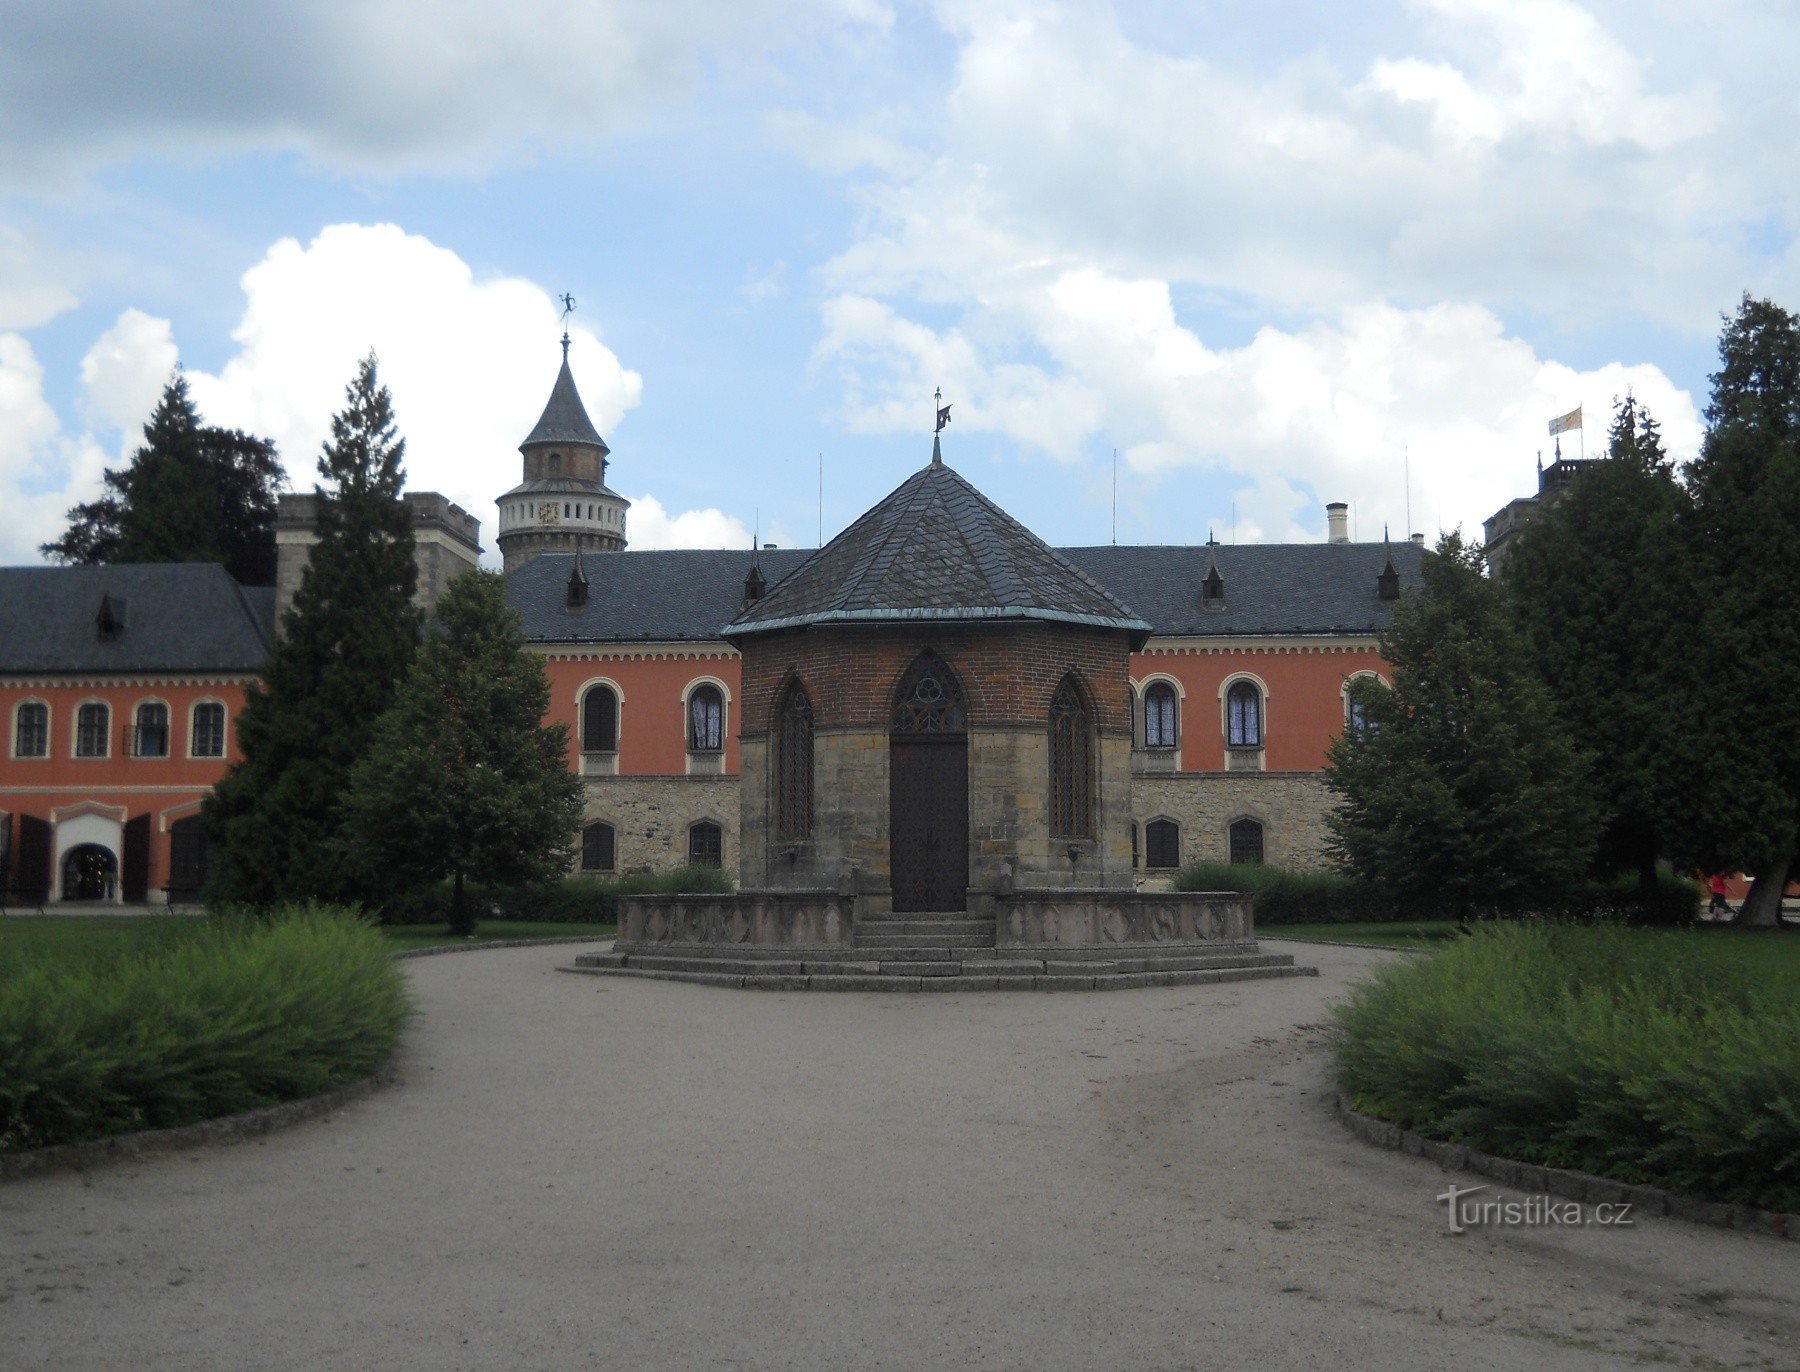 Tribunal de Honra com uma fonte, com uma torre redonda bretã e na extrema direita com uma torre quadrada austríaca